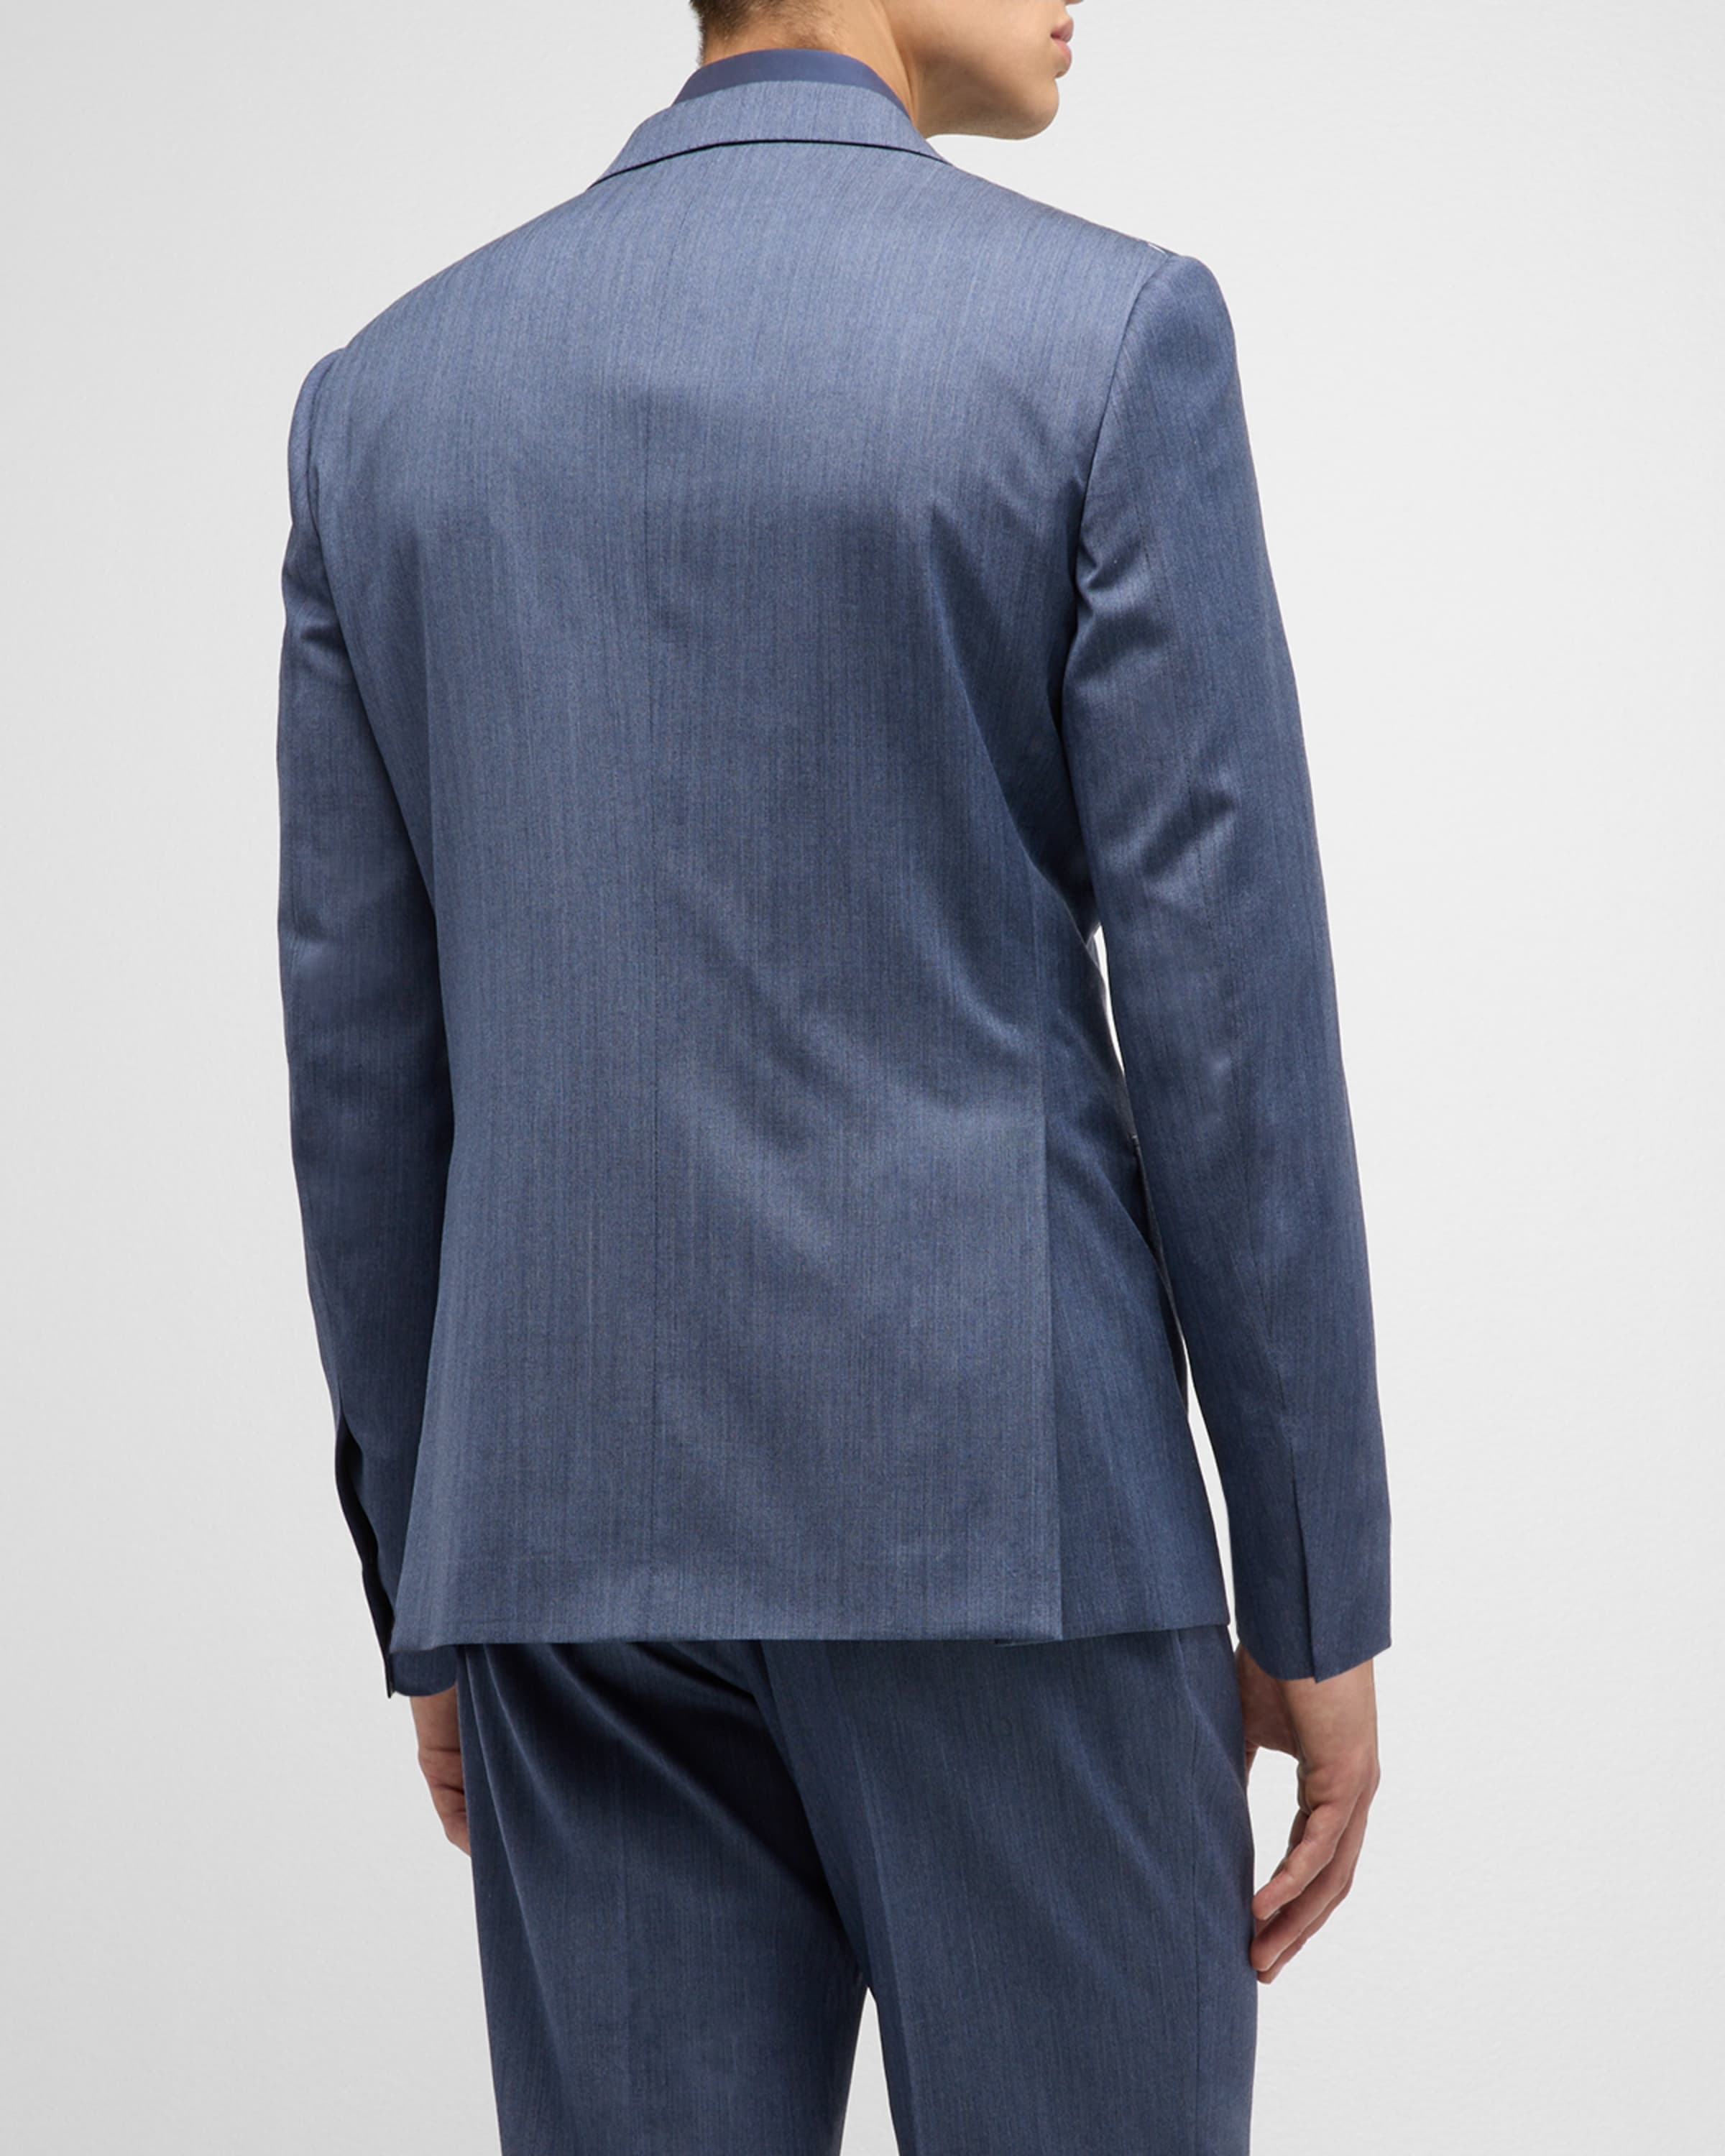 Men's Chevron Wool Suit - 5